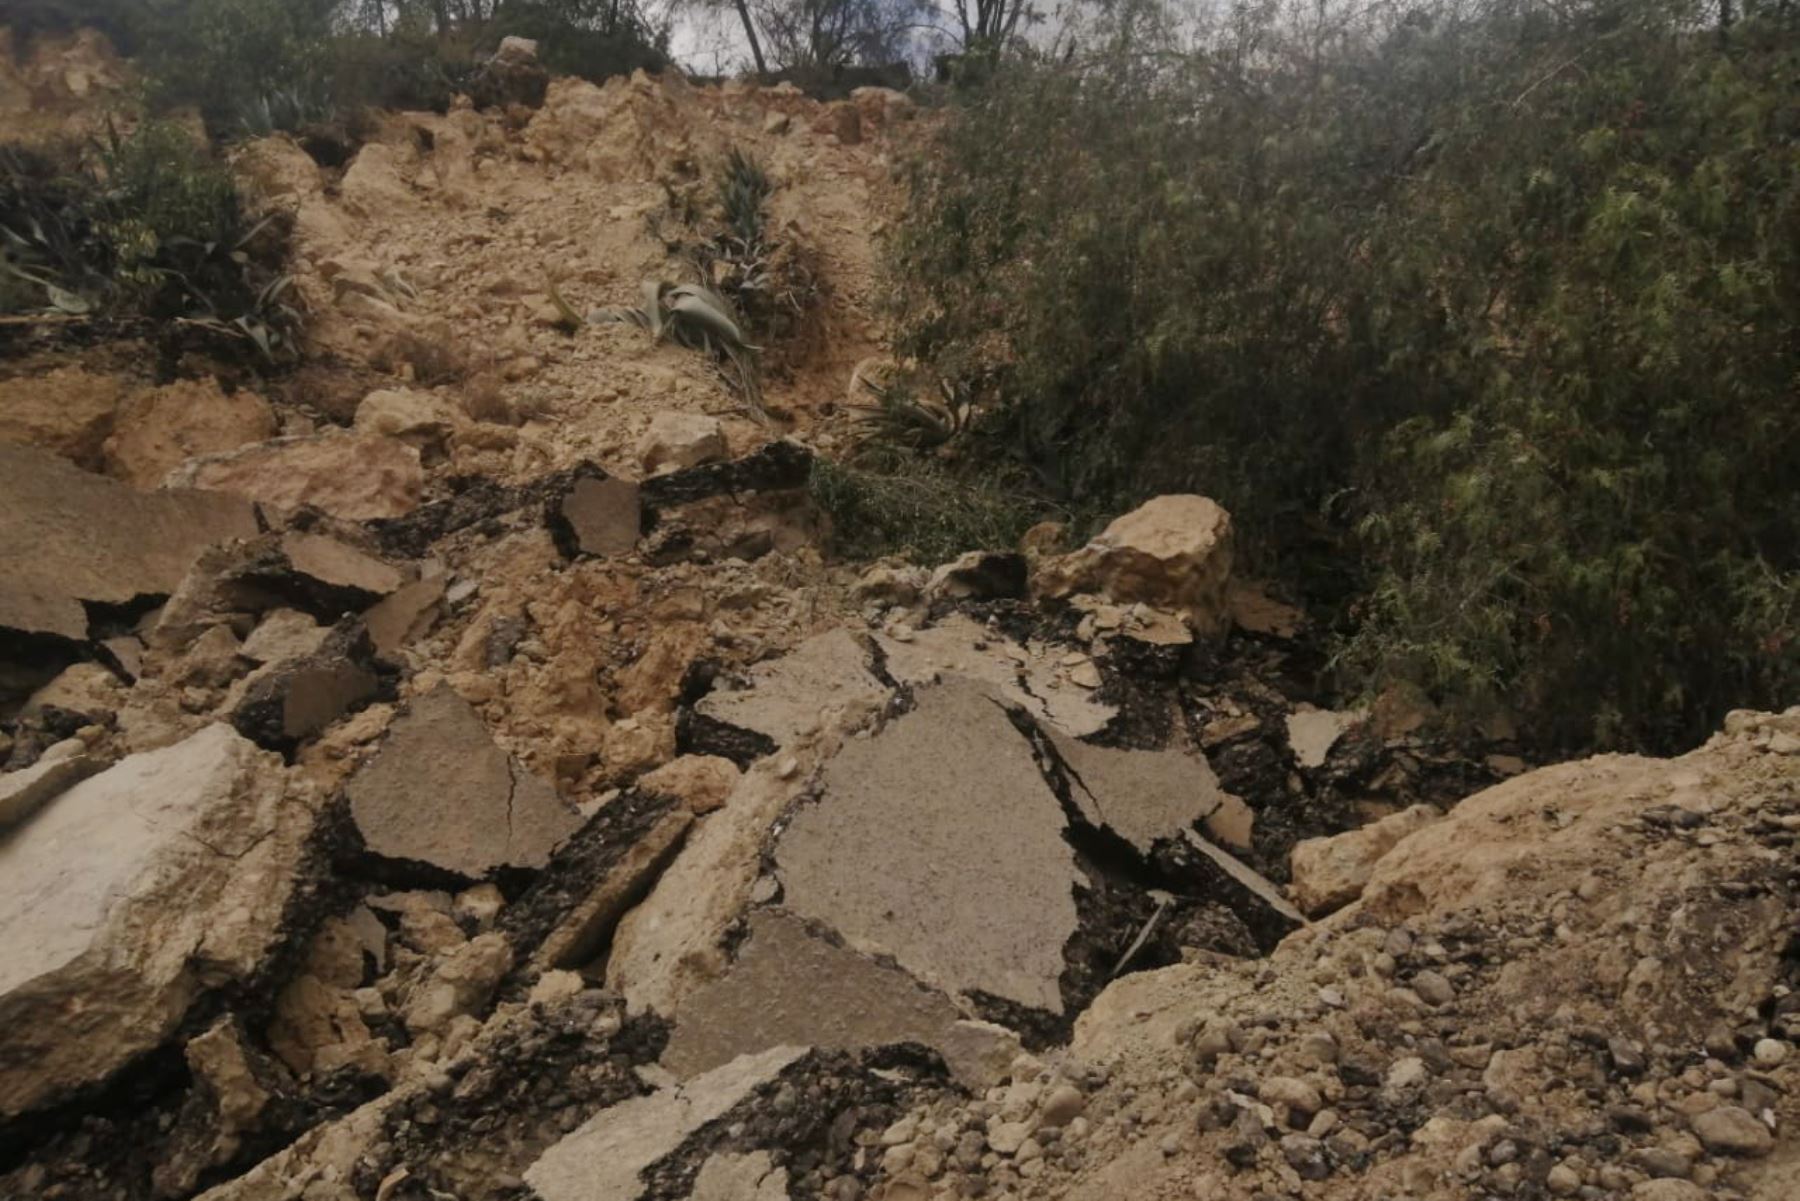 Los estudios del Ingemmet permitirán conocer la magnitud y estado actual del represamiento del cauce del río Puchca, así como el área afectada por el deslizamiento en el sector Culluchaca, región Áncash. Foto: ANDINA/Indeci Áncash